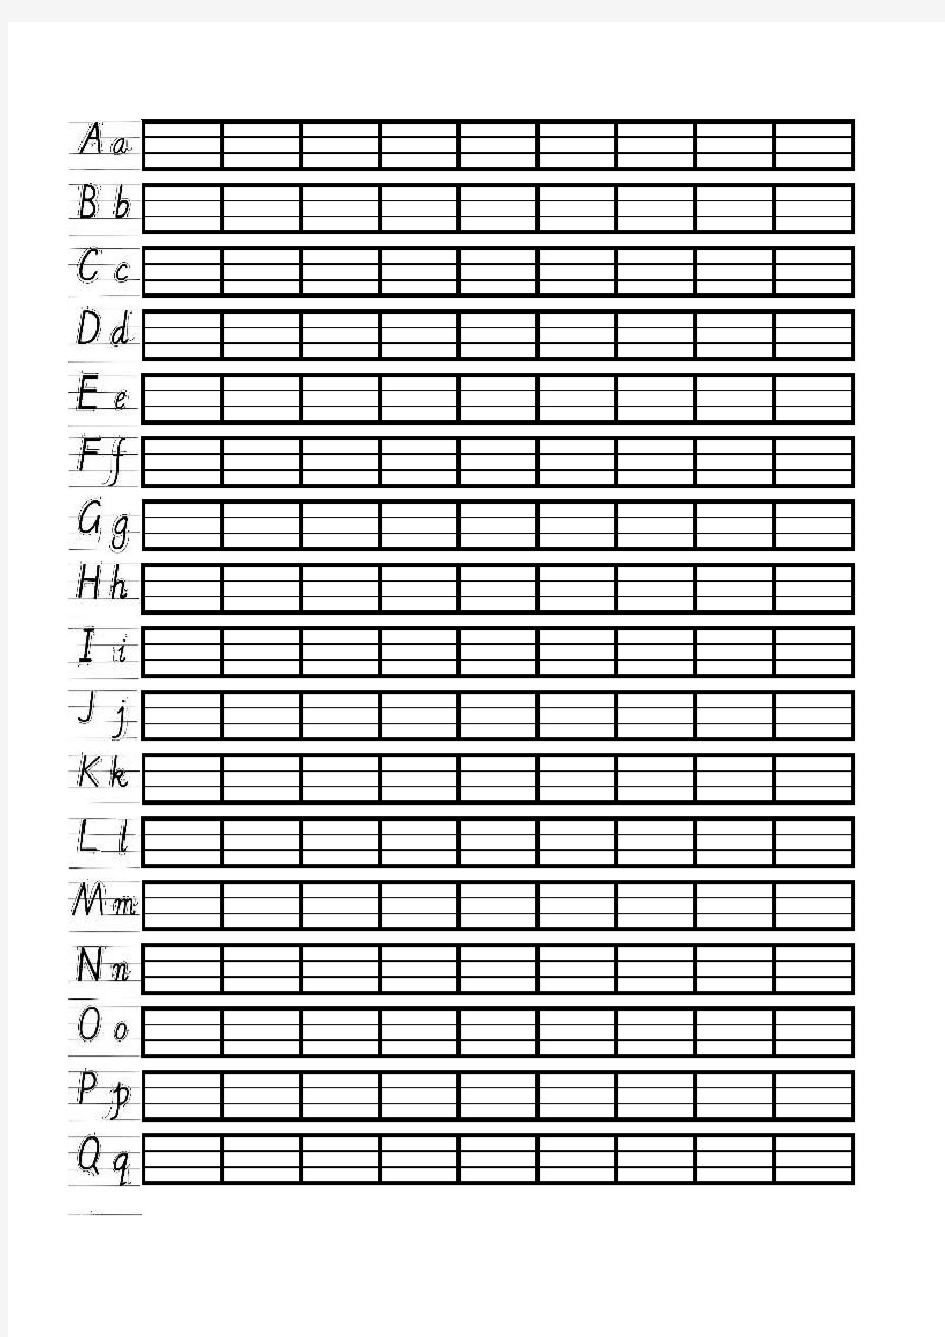 英语字母书法练习模板四线三格练习纸(a4电子打印版)